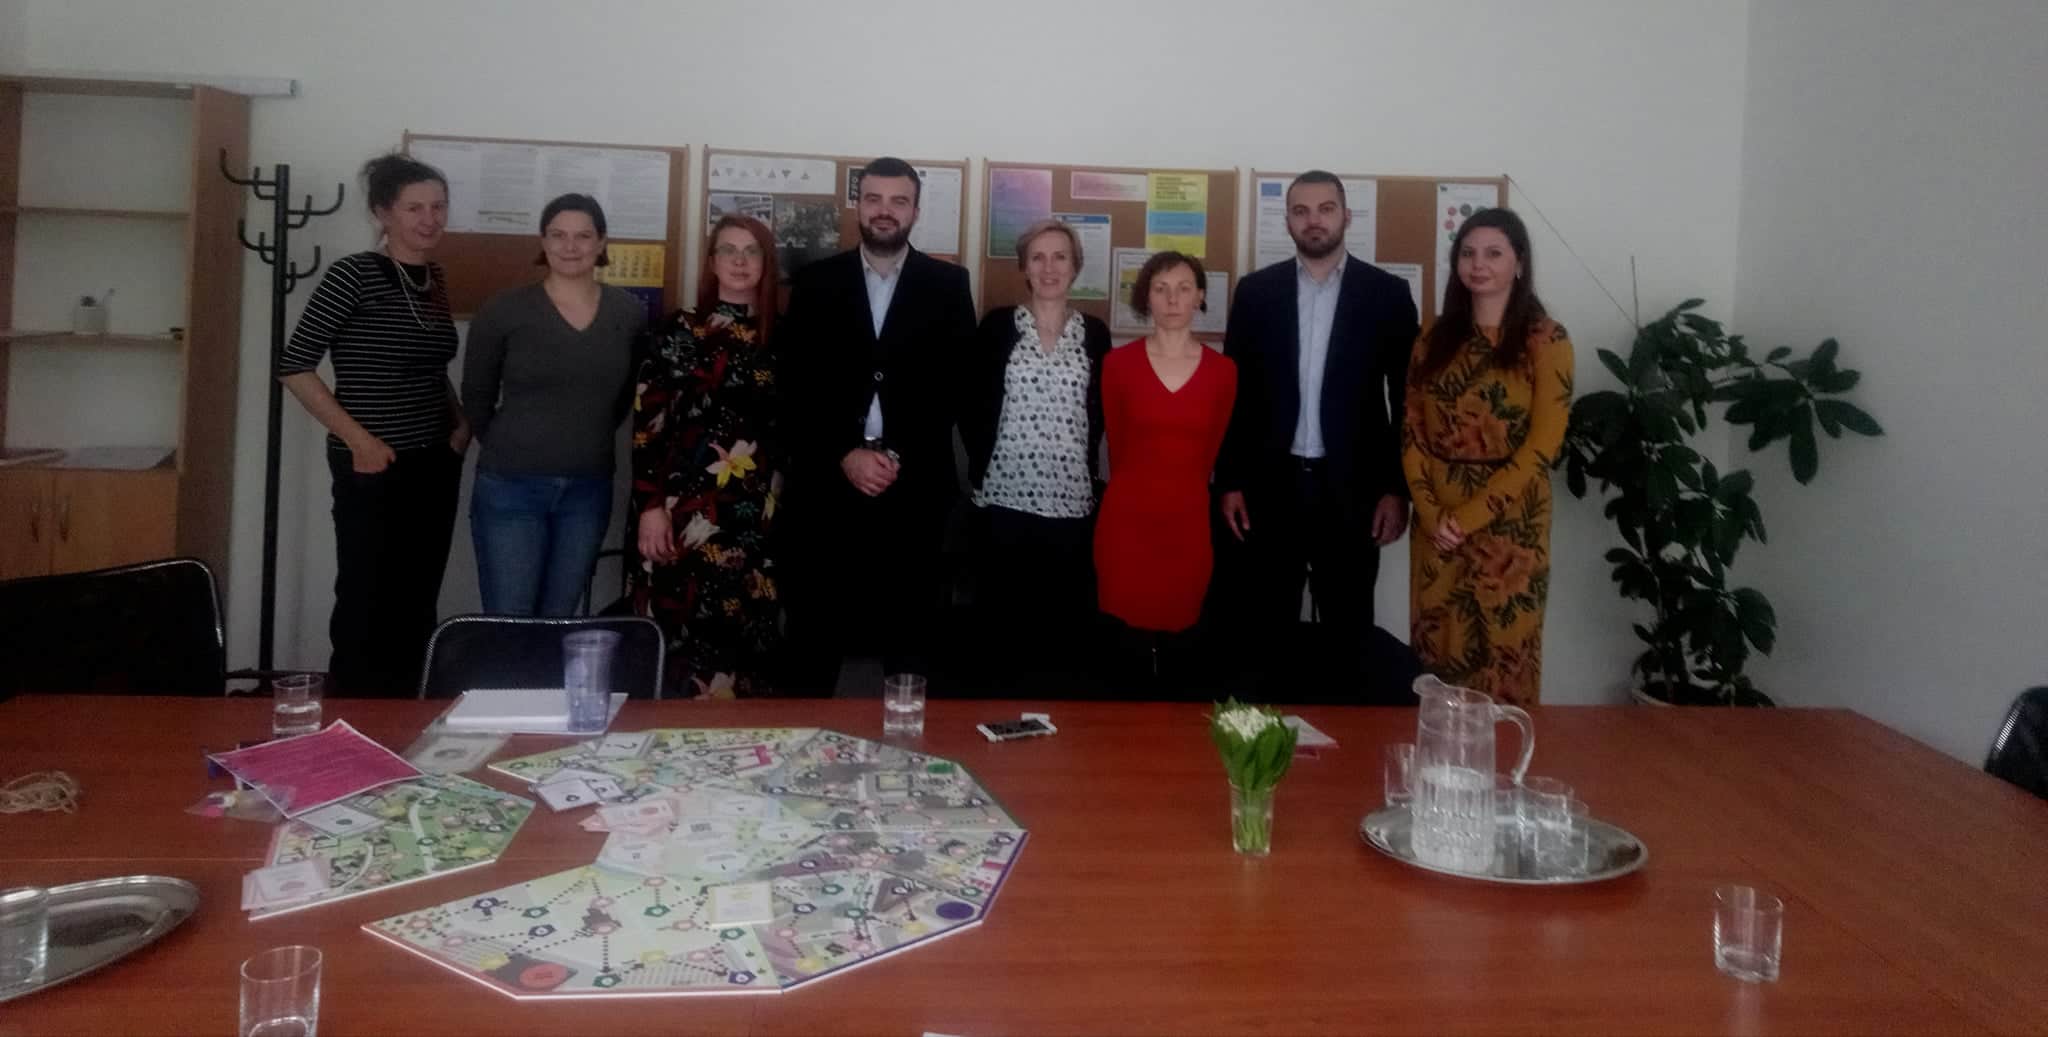 fotografia zo stretnutia so zahranicnou delegaciou z Bosny a Hercegoviny